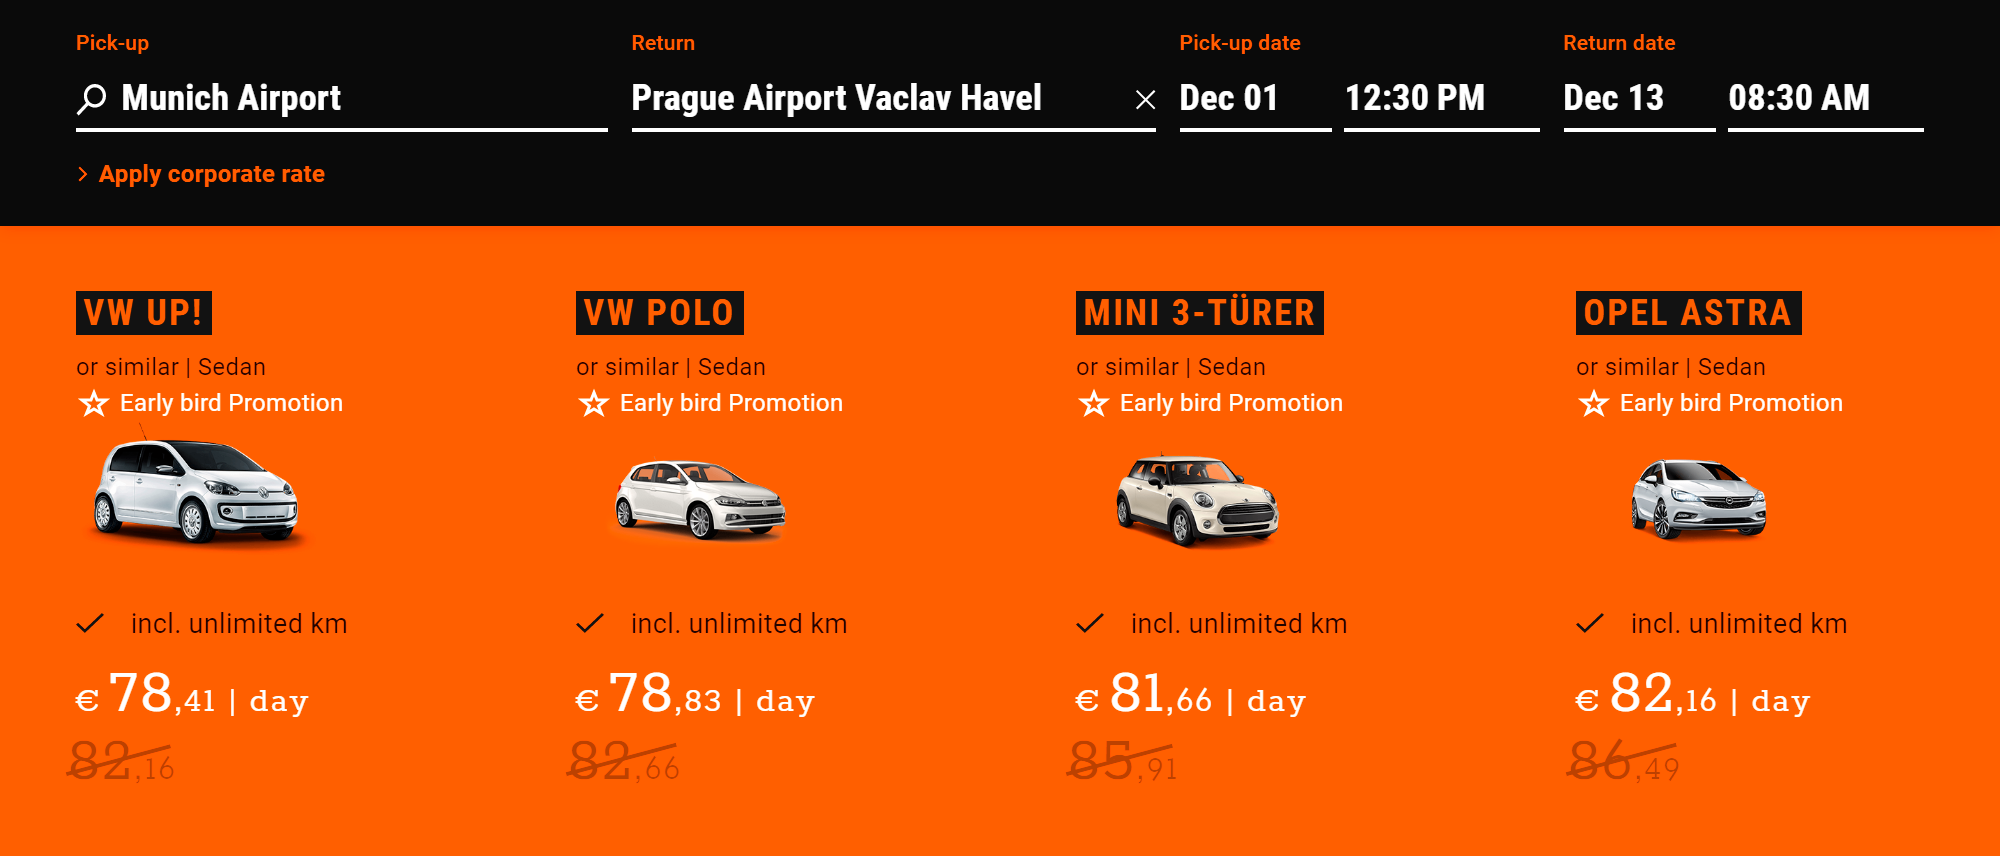 Иногда вернуть авто можно даже в другой стране. Но стоить это может очень дорого. Например, в «Сиксте» Фольксваген Поло можно взять в Мюнхене и вернуть в Праге за 78,8 € (6132 ₽) в день